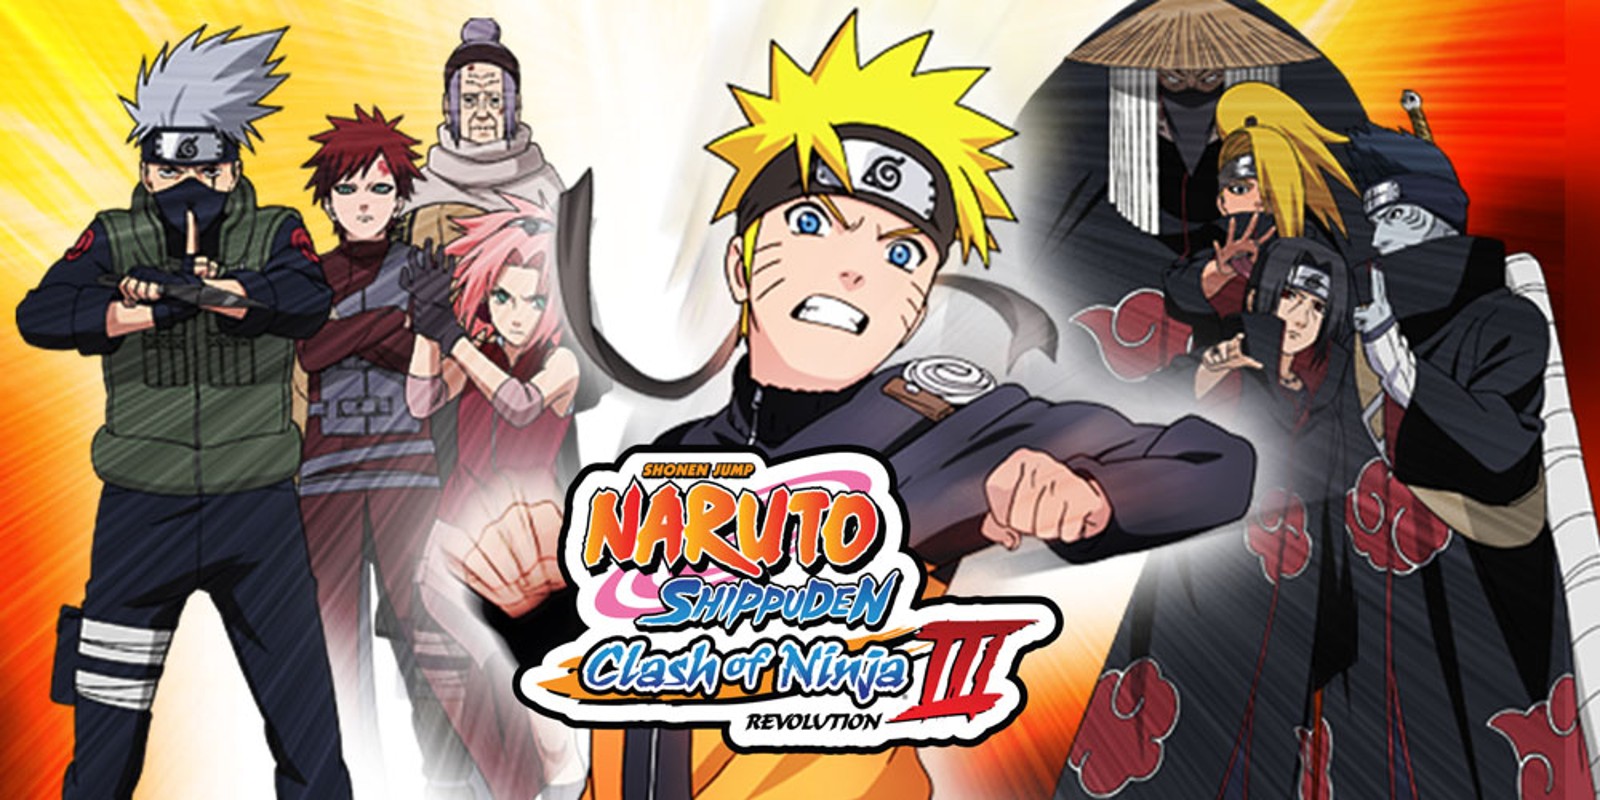 Naruto Shippuden: Clash of Ninja Revolution 3 - European Version, naruto  clash of ninja 